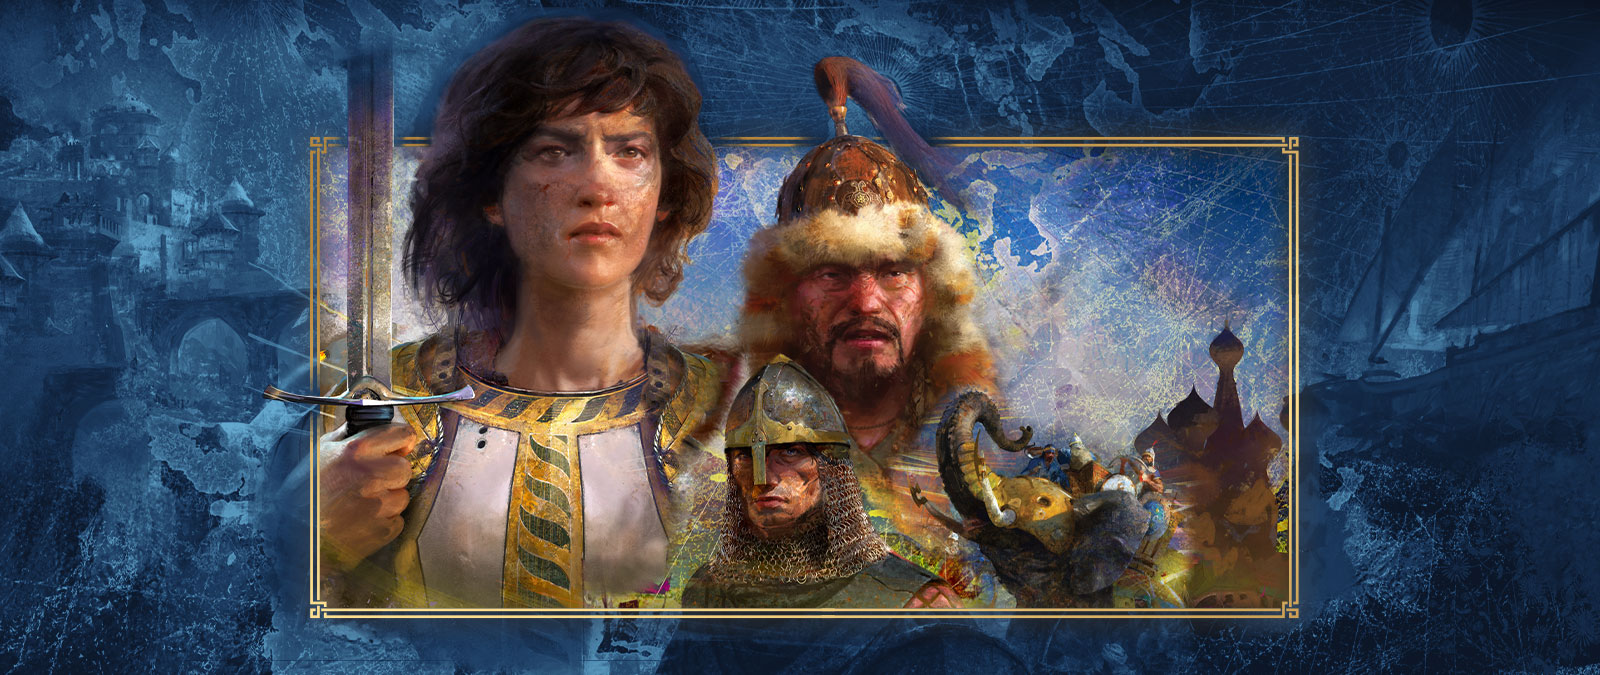 Vários personagens de diferentes civilizações posam juntos na frente de representações de batalha.